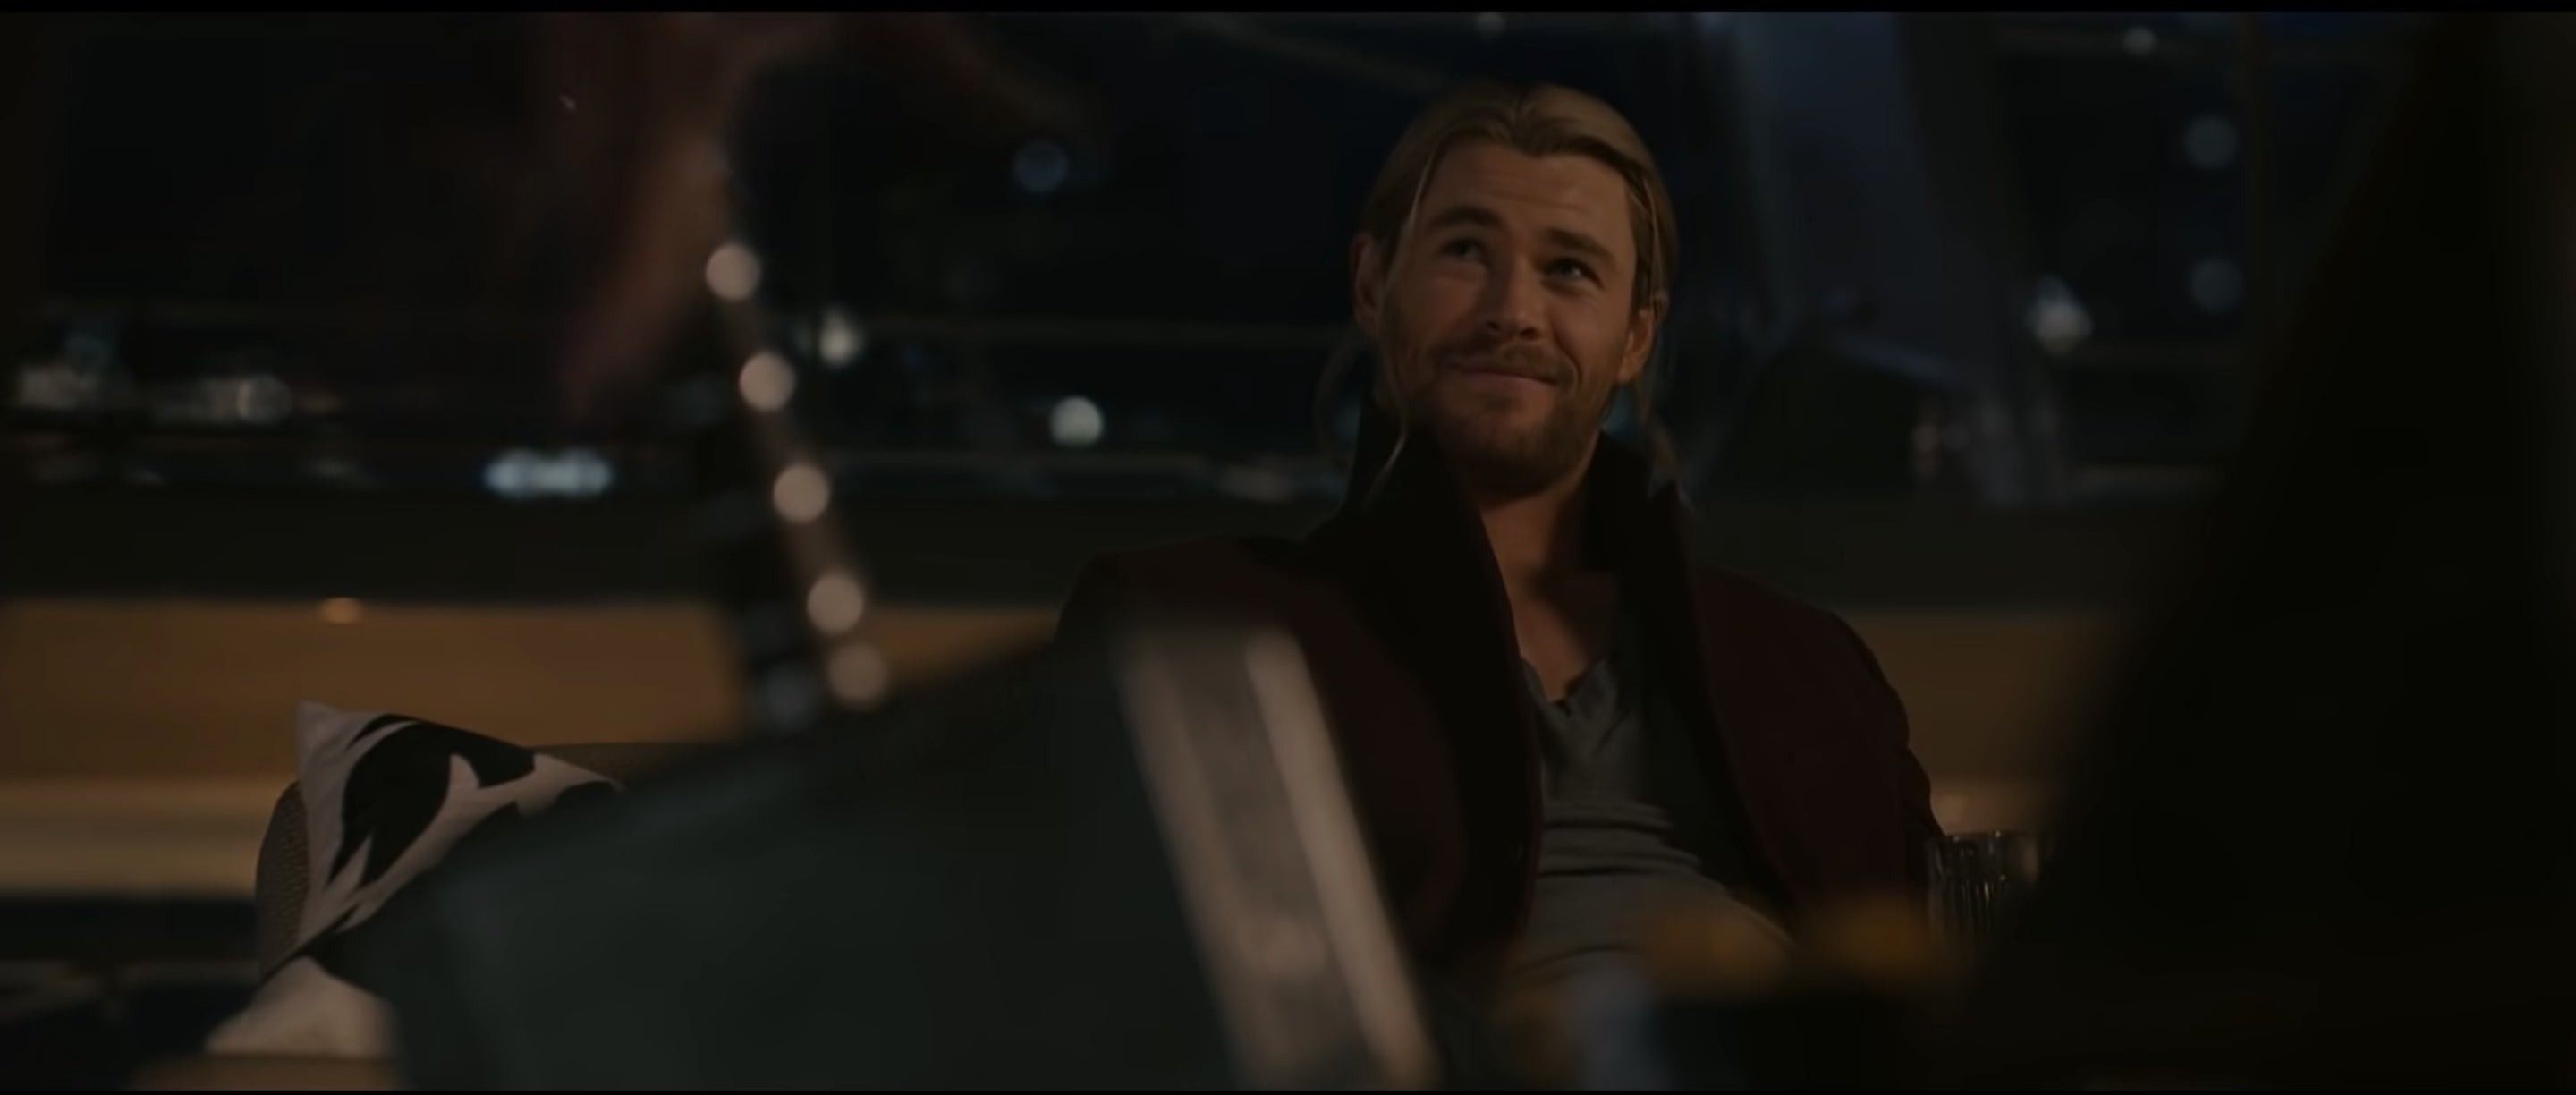 Thor smiling